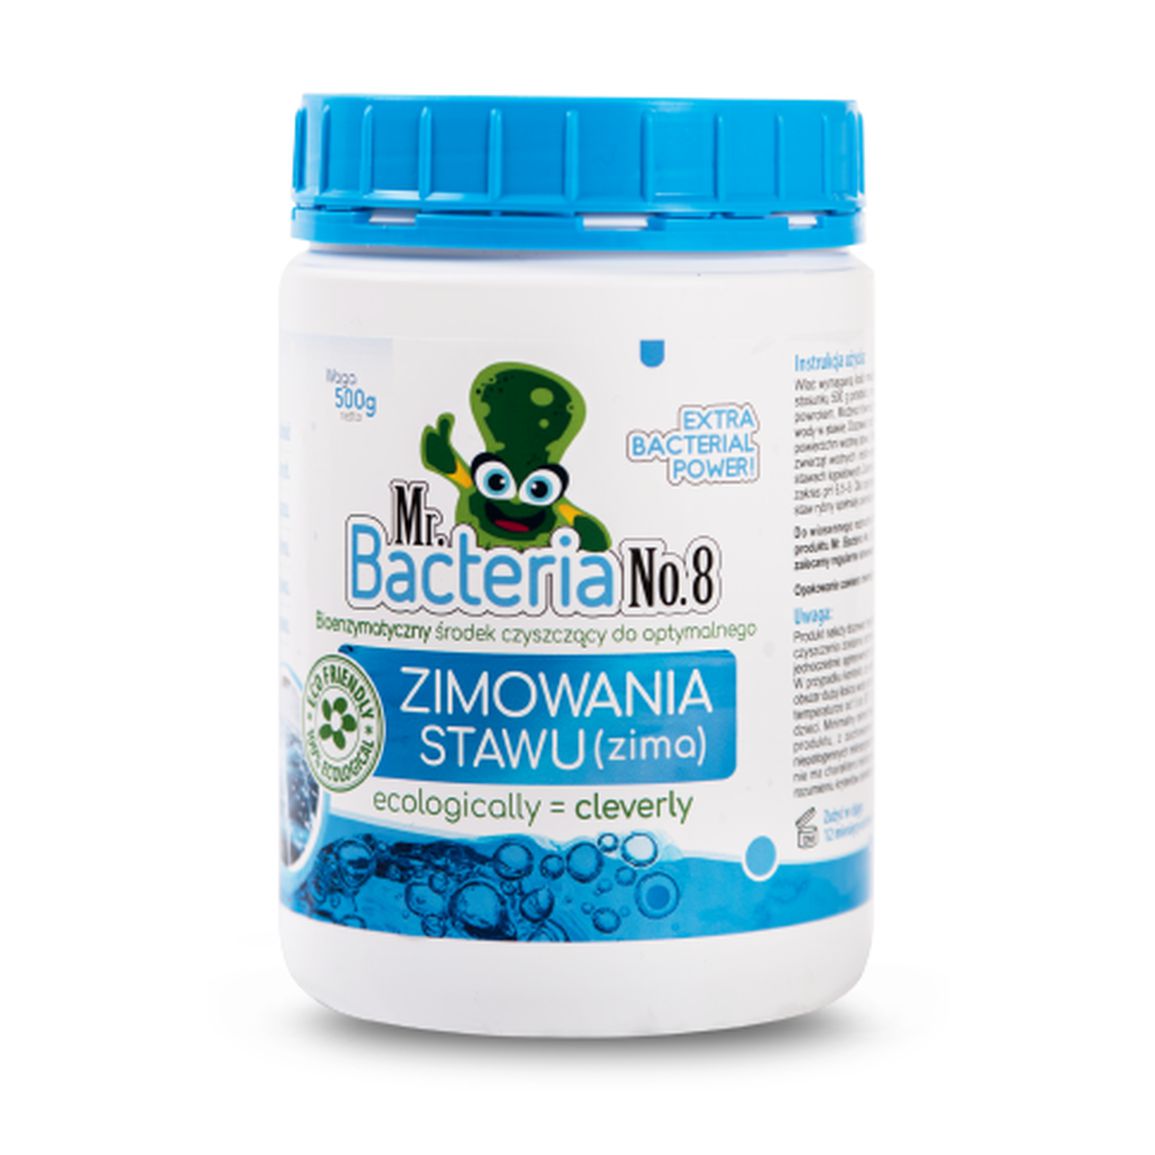 Mr. Bacteria No.8 Bioenzymatyczny środek czyszczący do optymalnego